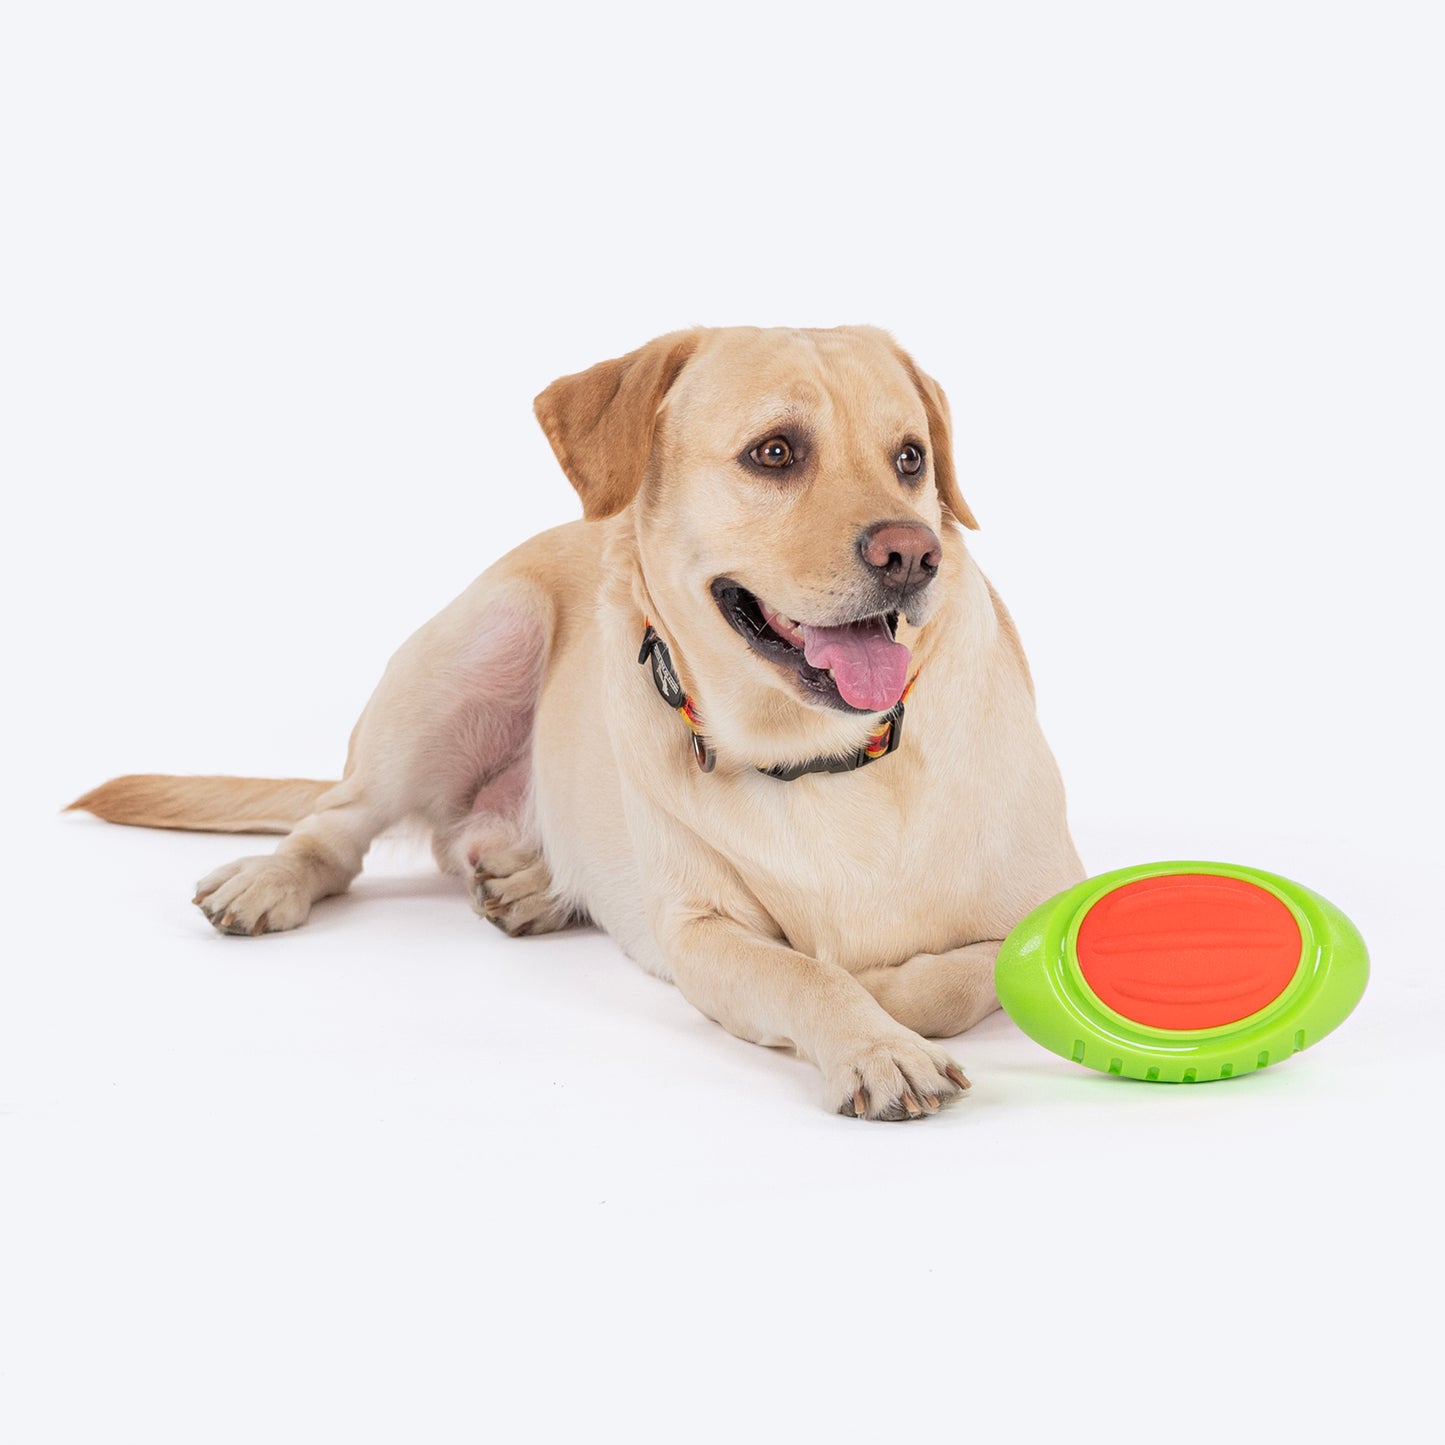 Dash Dog Sprinter Fetch Toy For Dog - Green & Orange - L_05